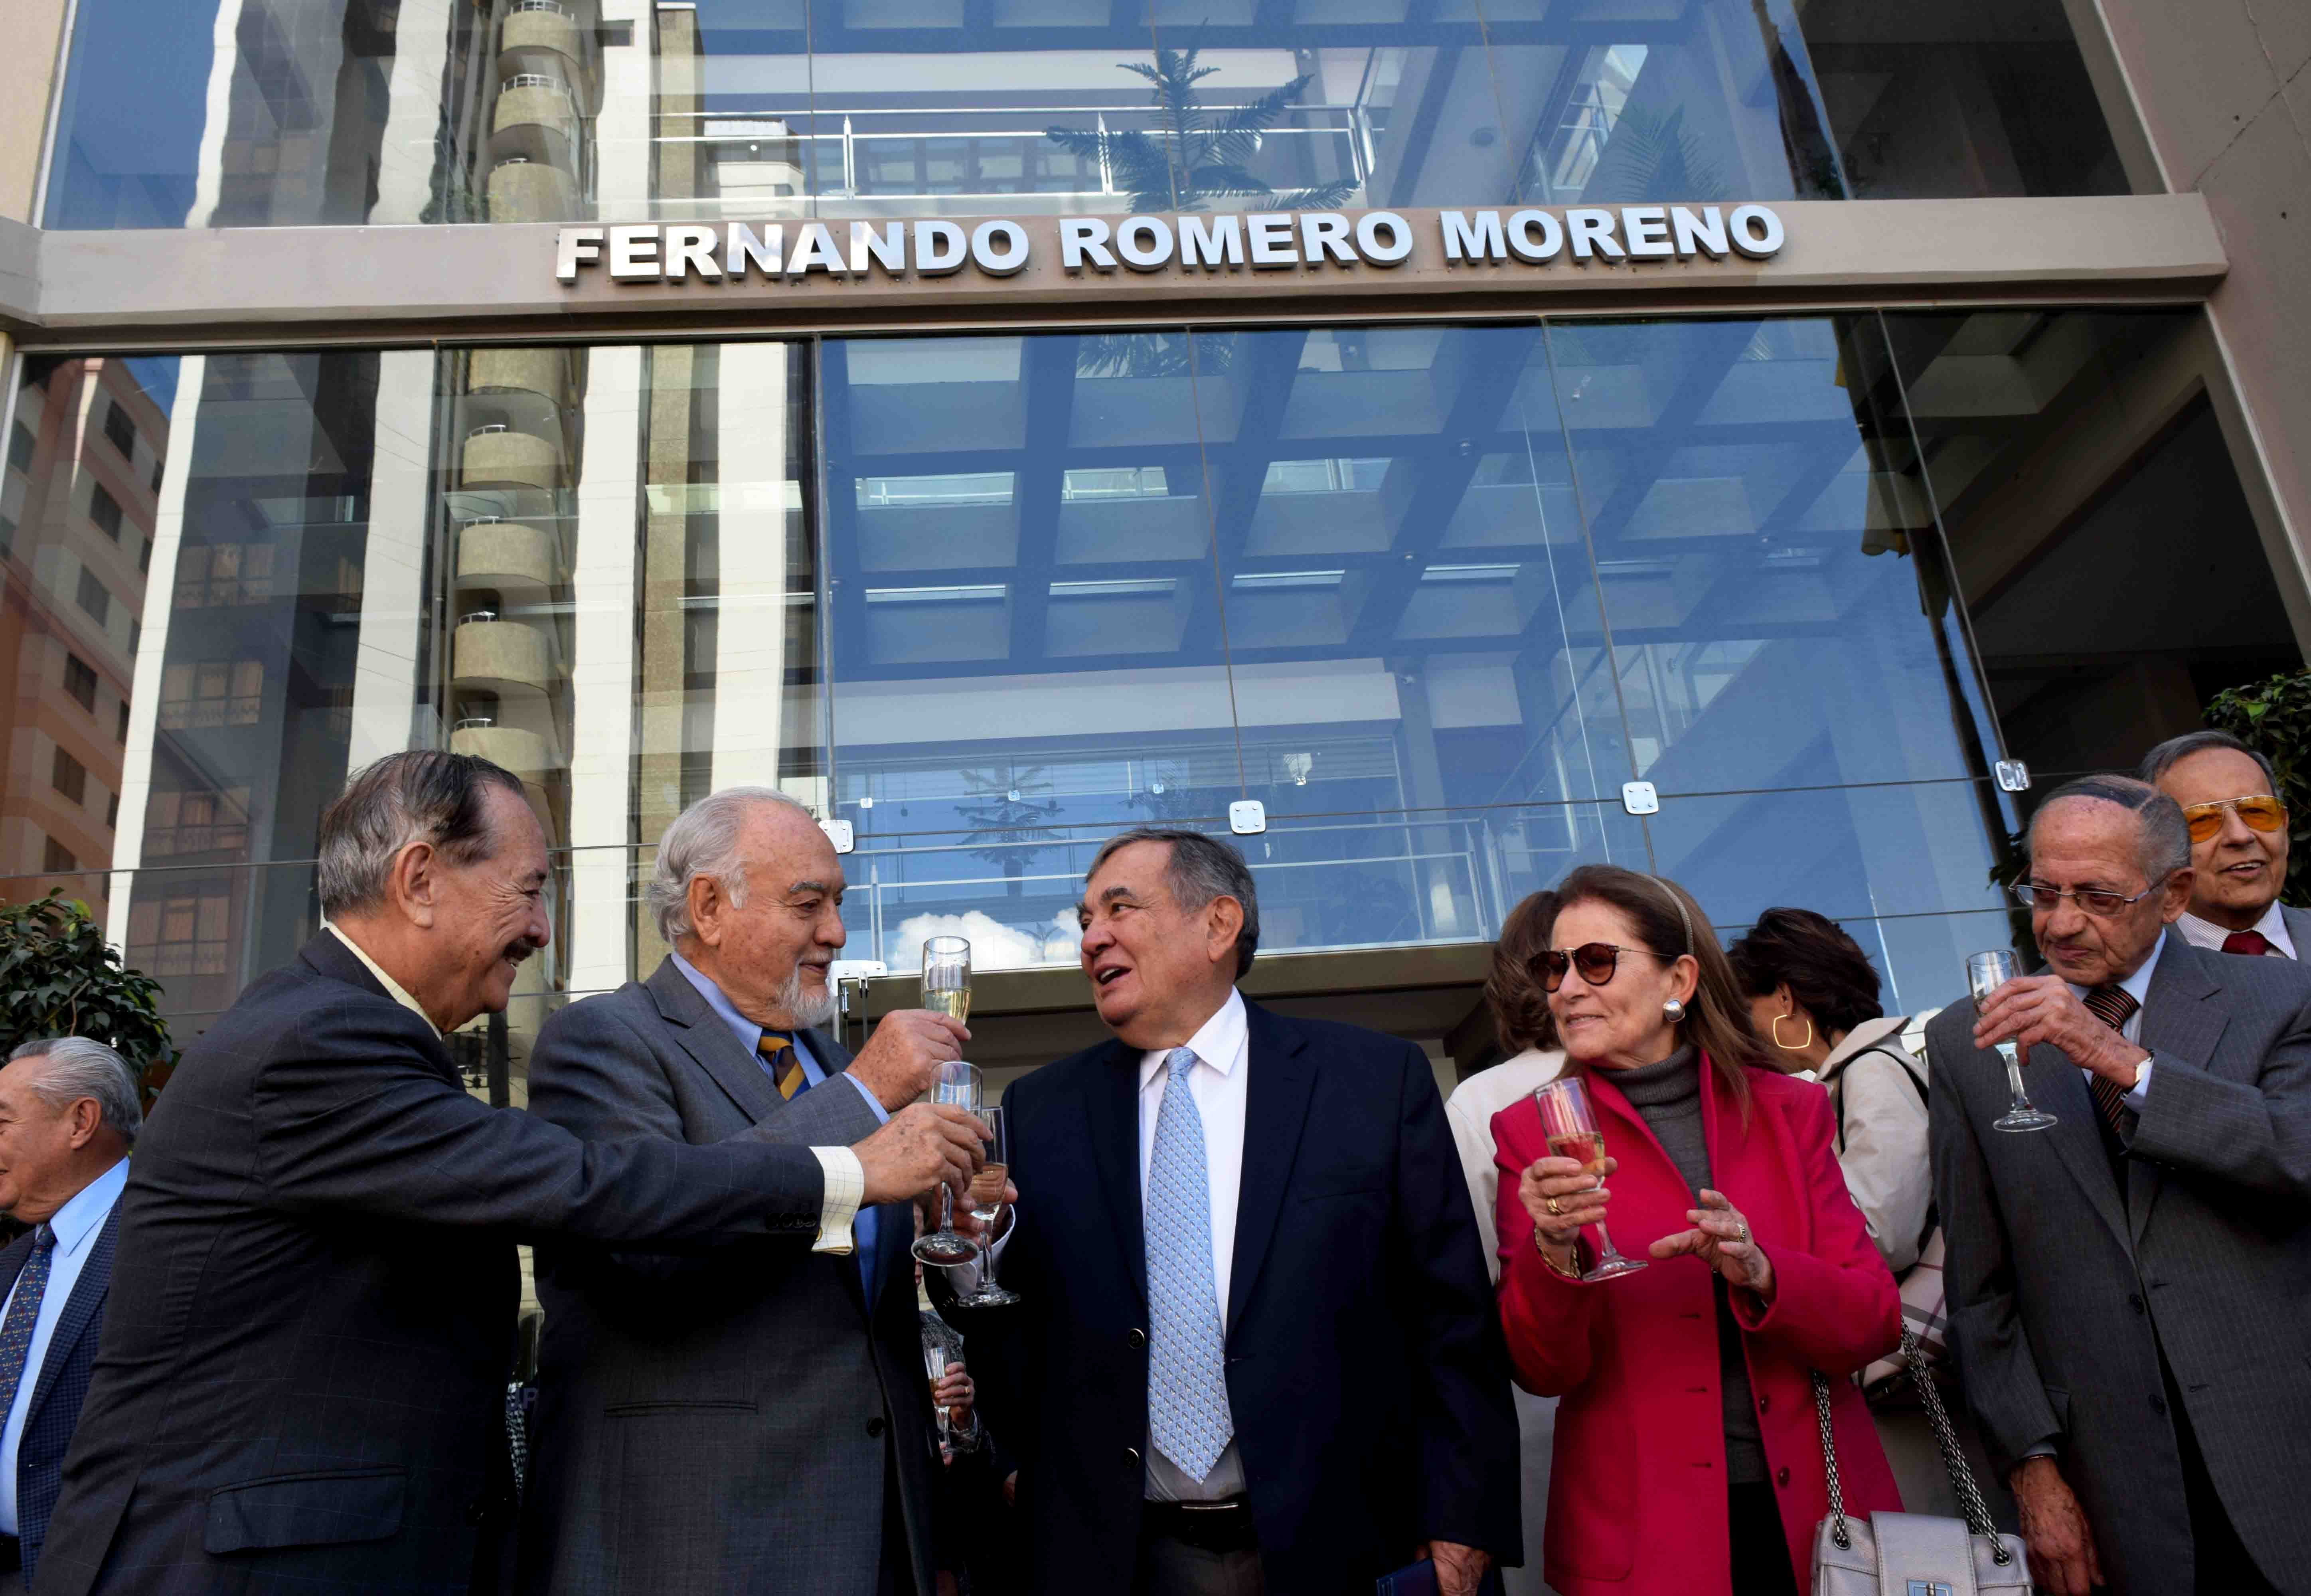 La Escuela de Negocios de la UPB rindió homenaje a “Fernando Romero Moreno”